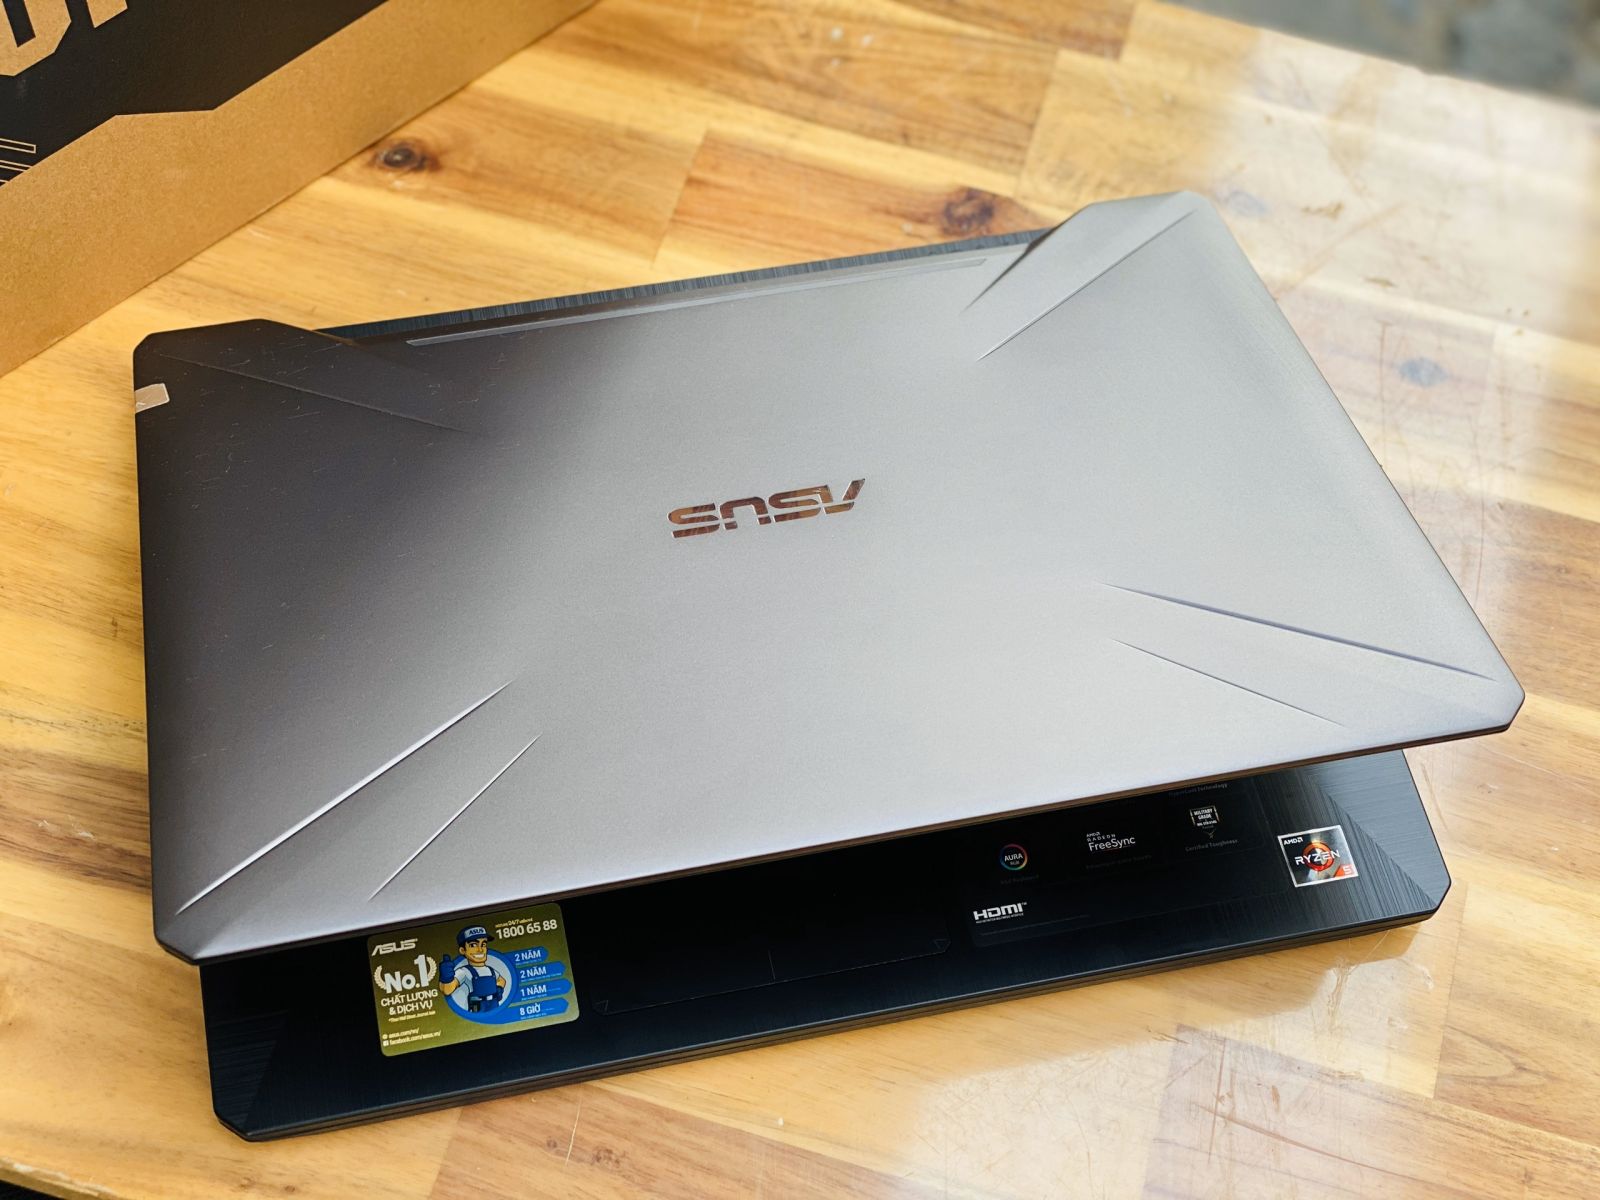 Laptop Asus TUF Gaming FX505GD i5 8300H/ 8G/ SSD128+1000G/ GTX1050 4G/ Viền Mỏng/ LED RGB 7 Màu/ Giá rẻ2